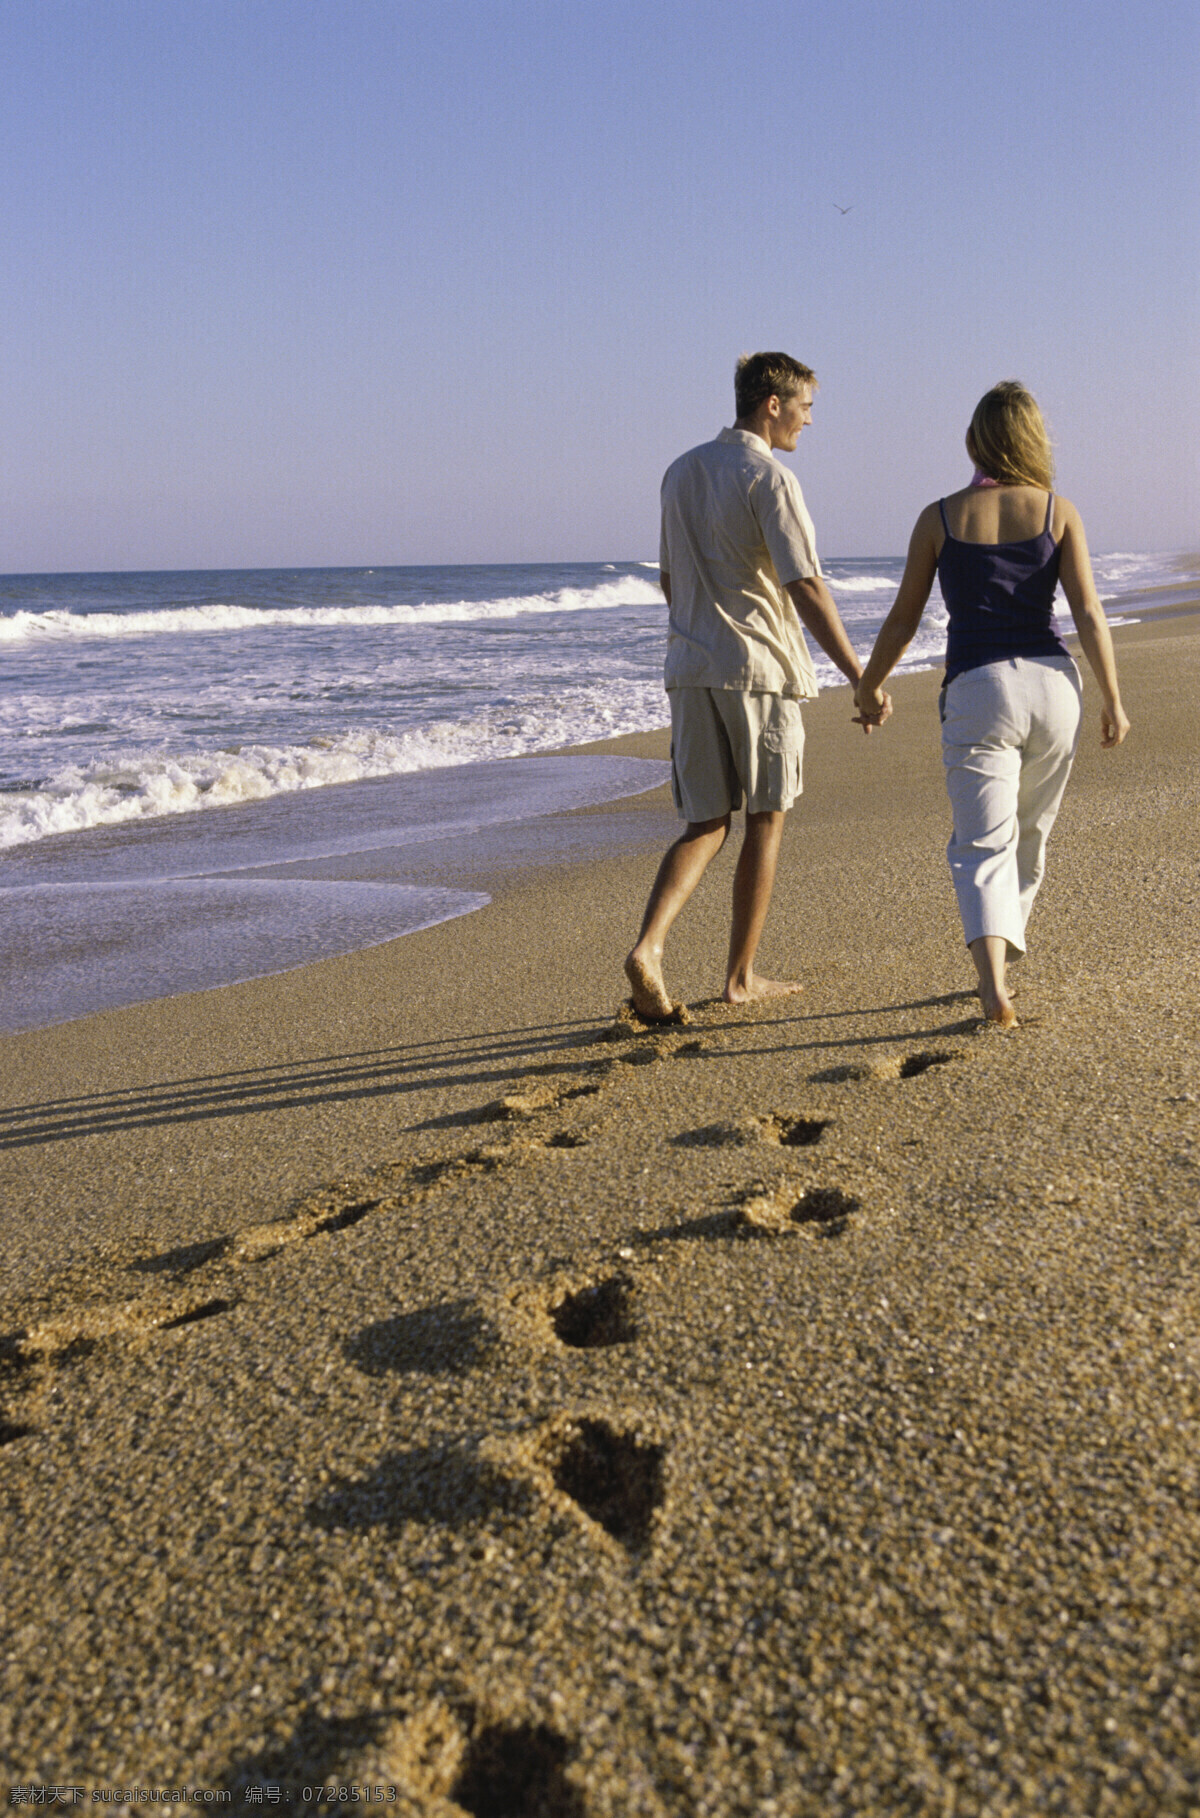 海边 散步 情侣 海边人物 沙滩 海滩 外国男性 男人 女性 女人 外国夫妻 夫妇 恩爱 恋人 脚印 生活人物 人物图片